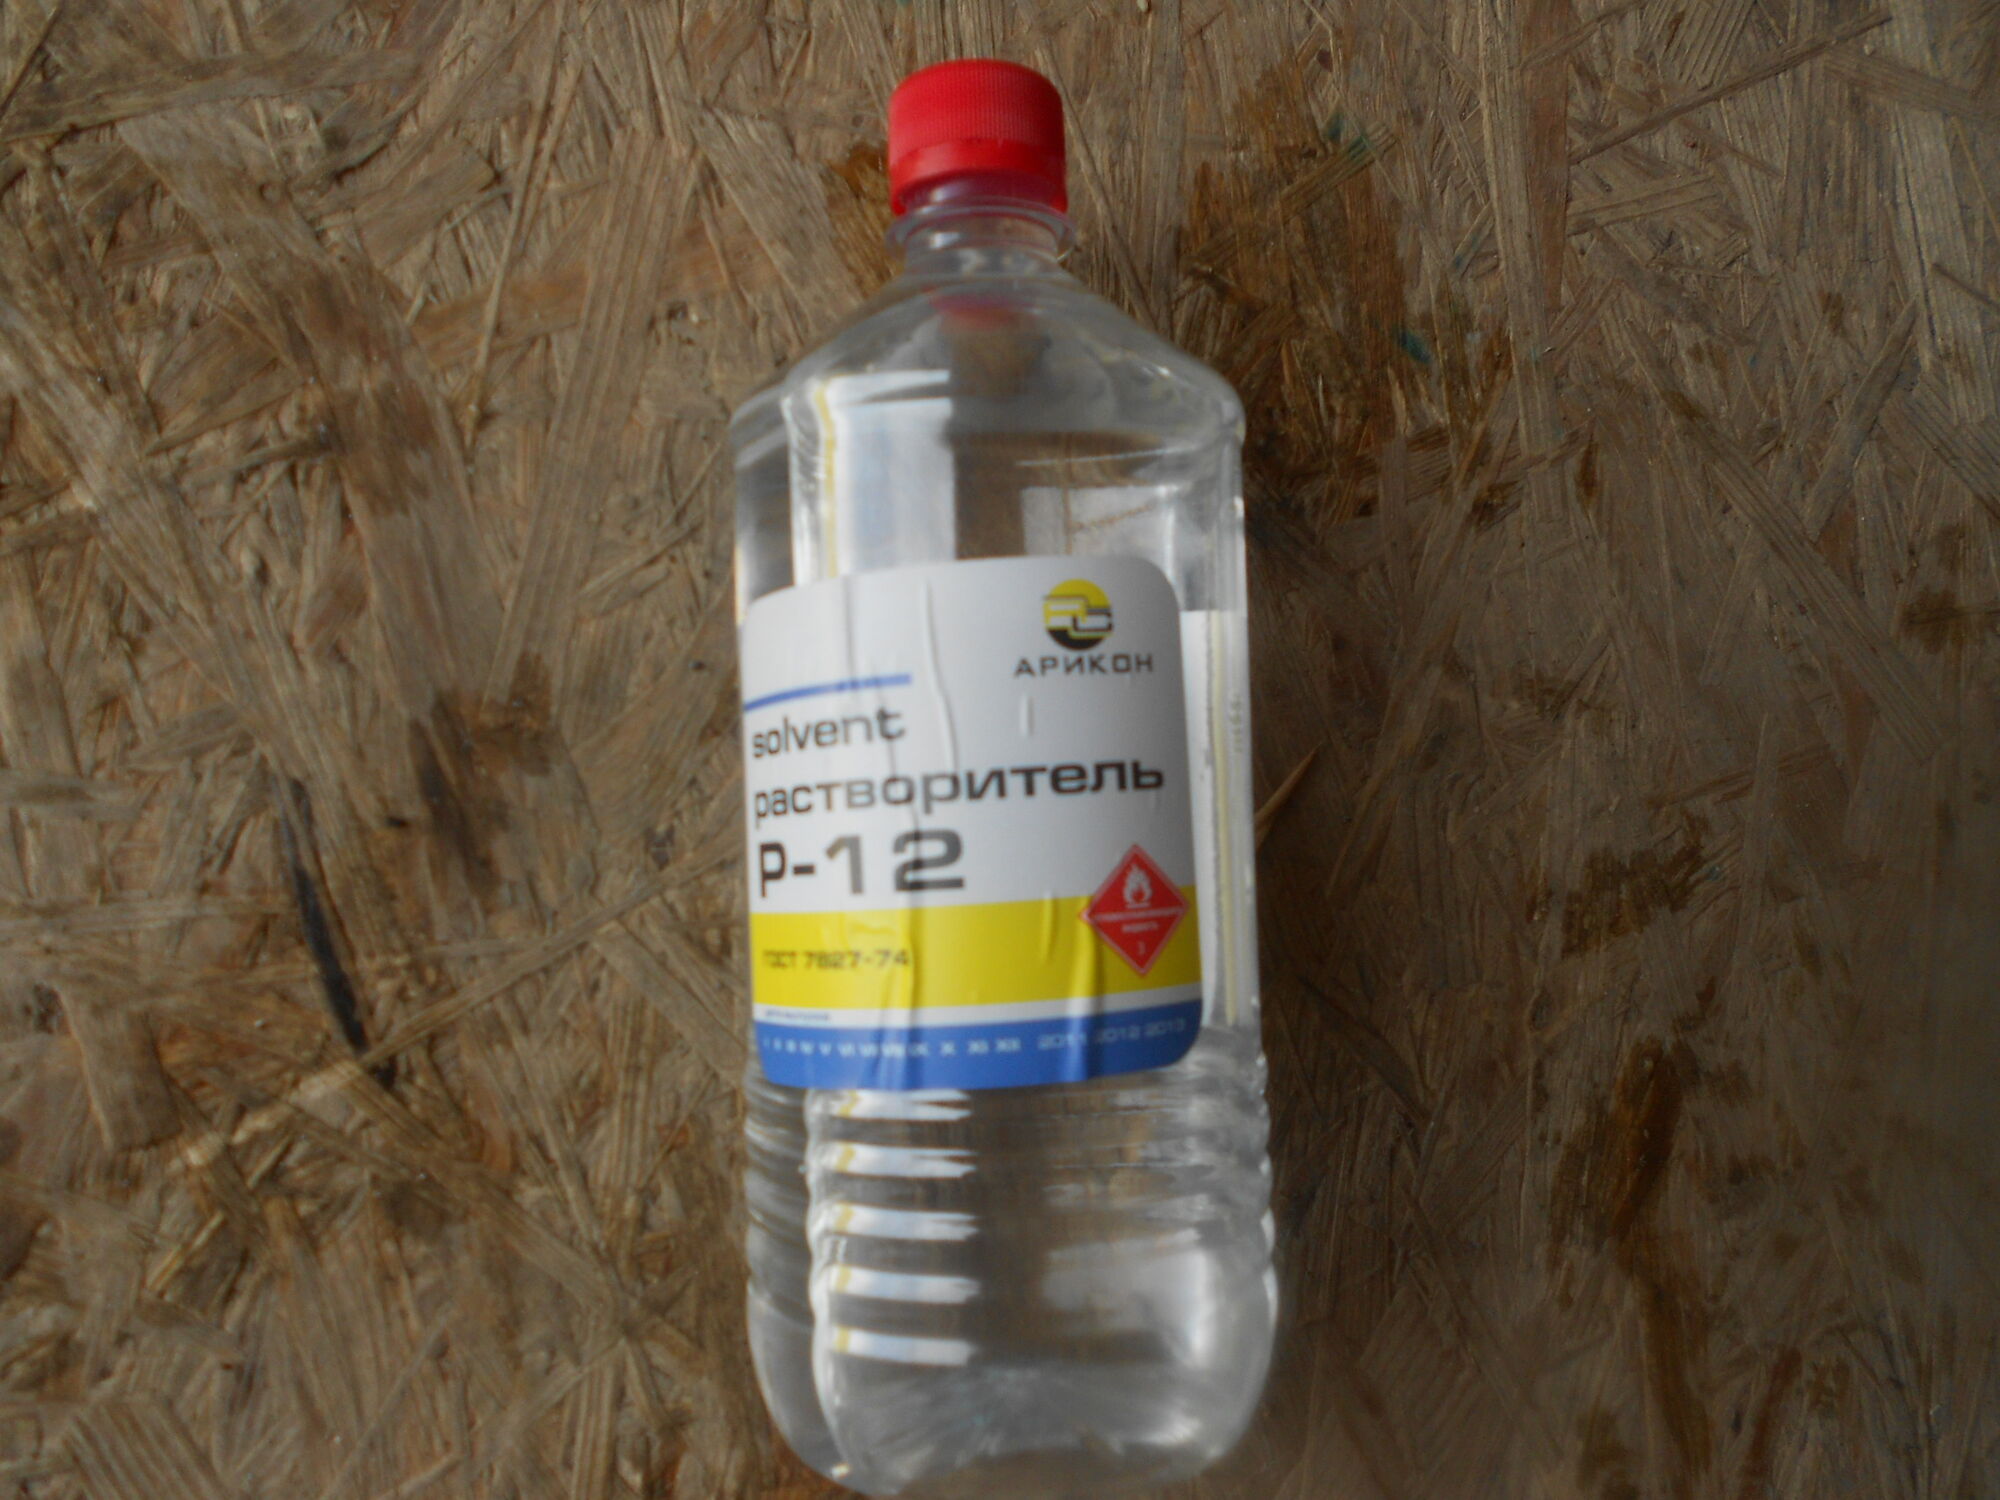 Растворитель р-12 сальвент 1 литр производитель арикон